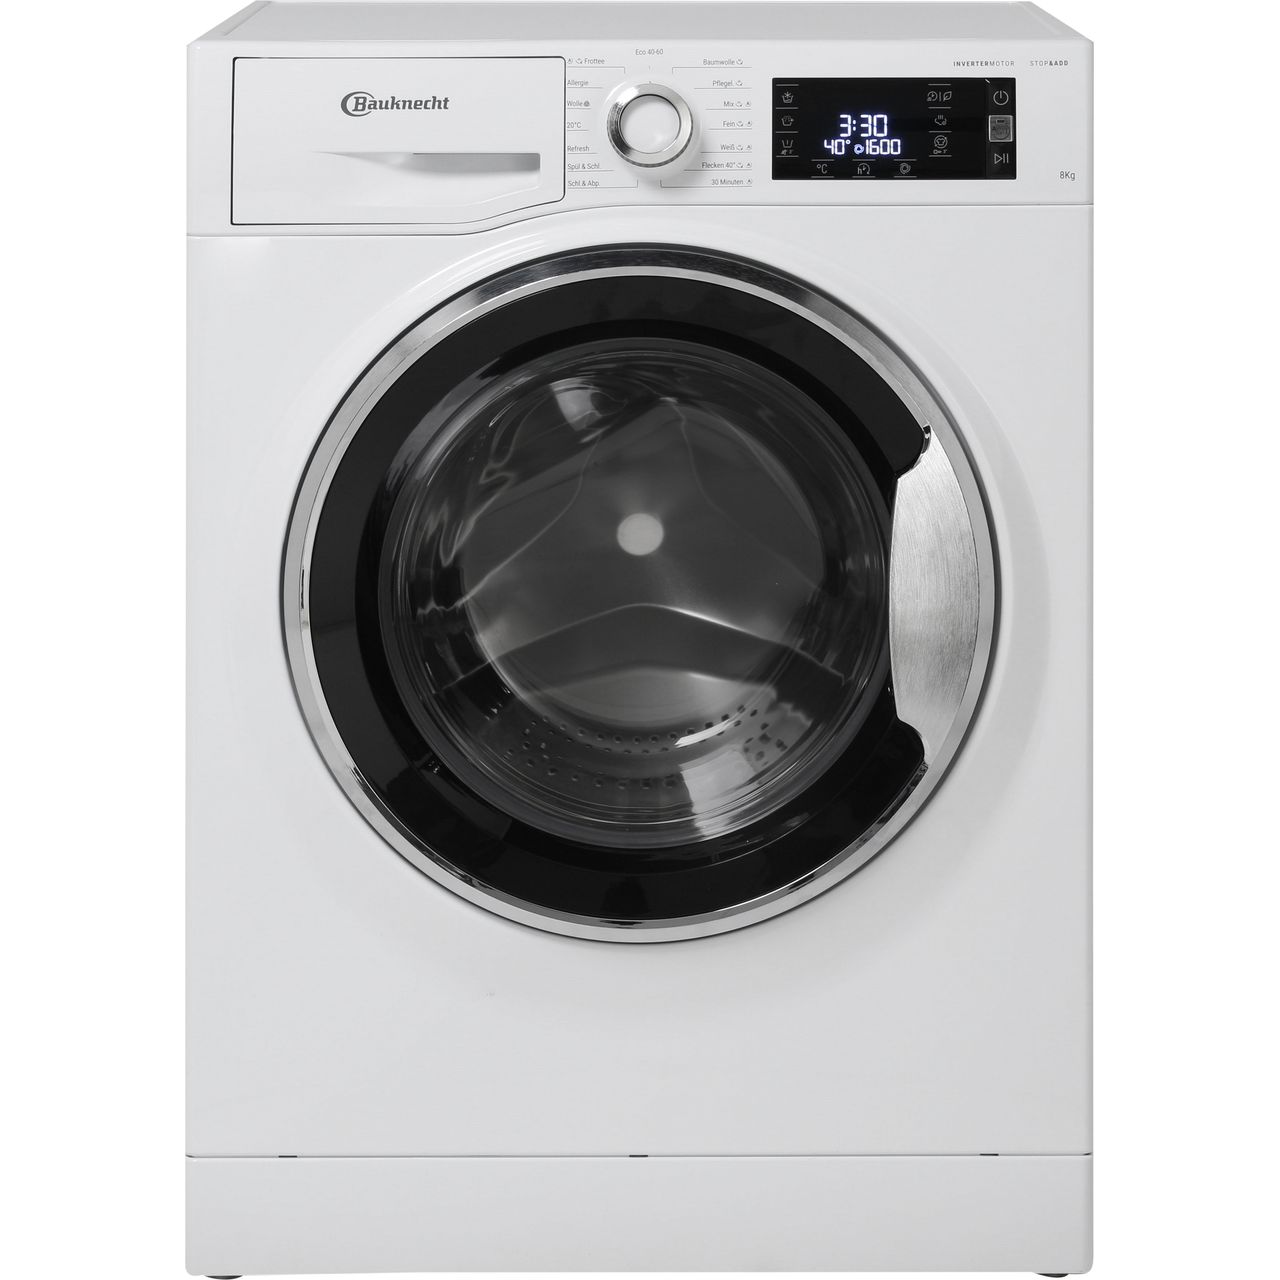 Bauknecht WM Elite 816 C Waschmaschinen - Weiß